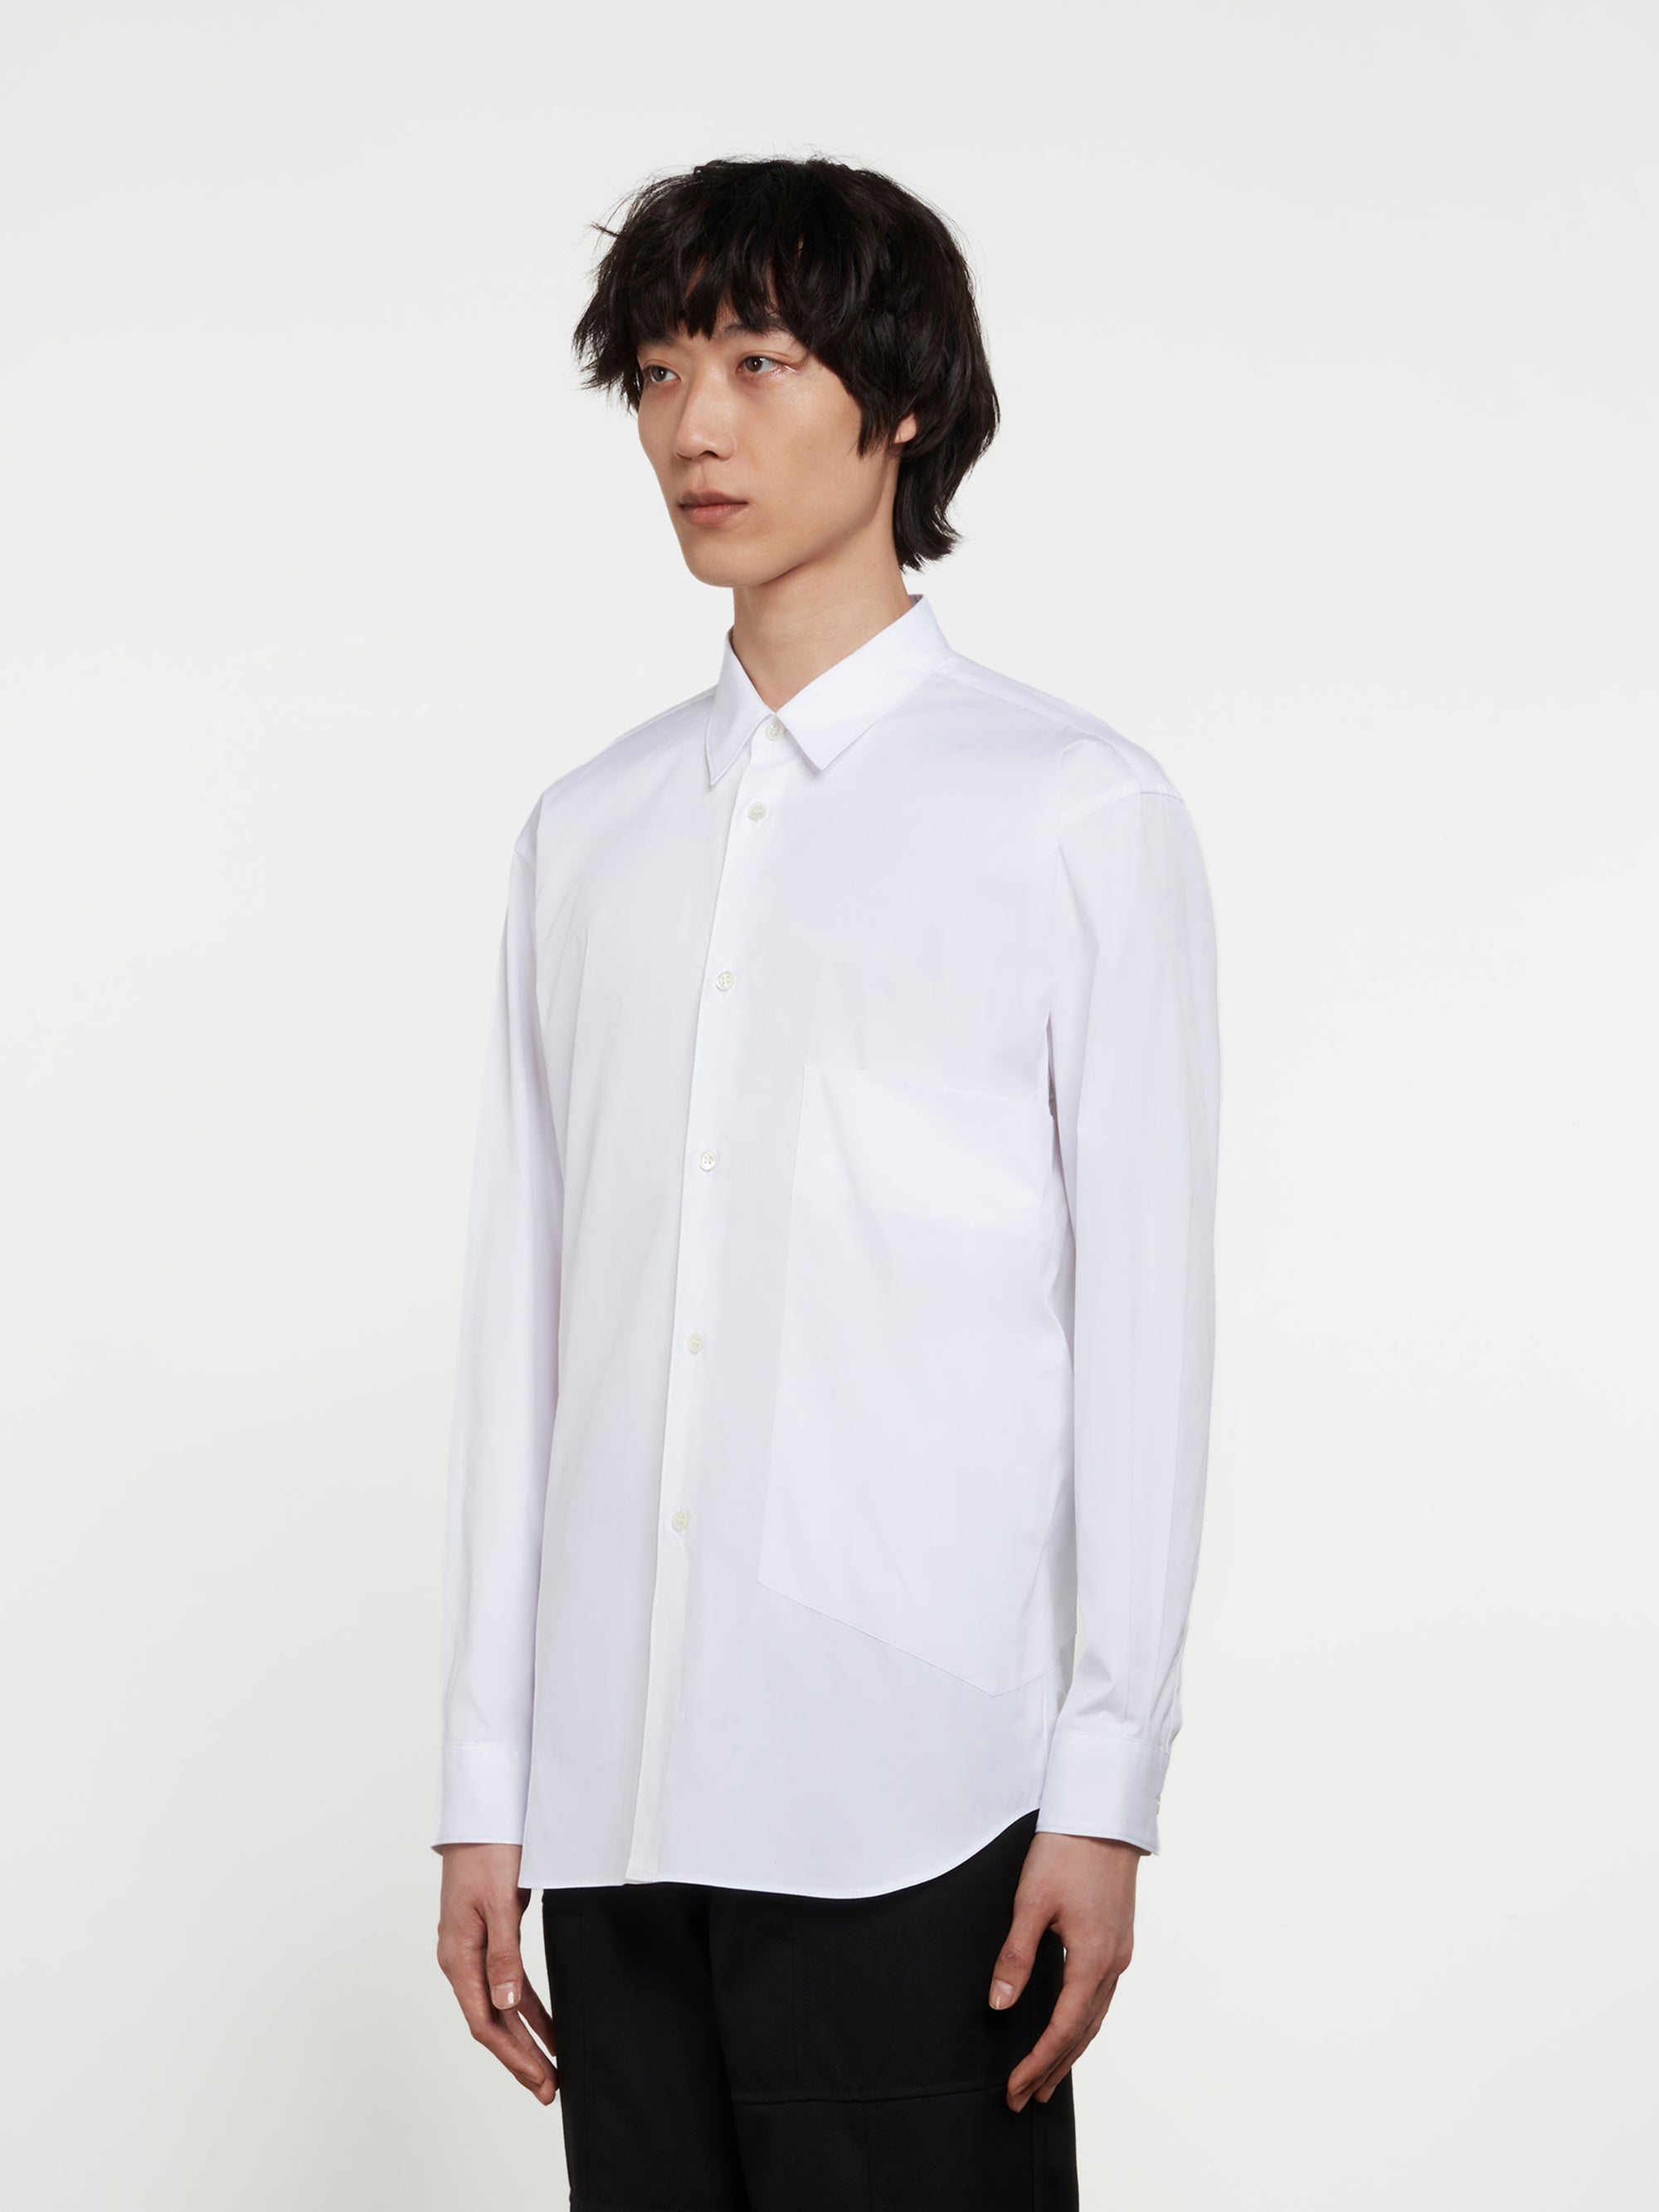 CDG Shirt - Men's Oversized Pocket Shirt - (White) view 2